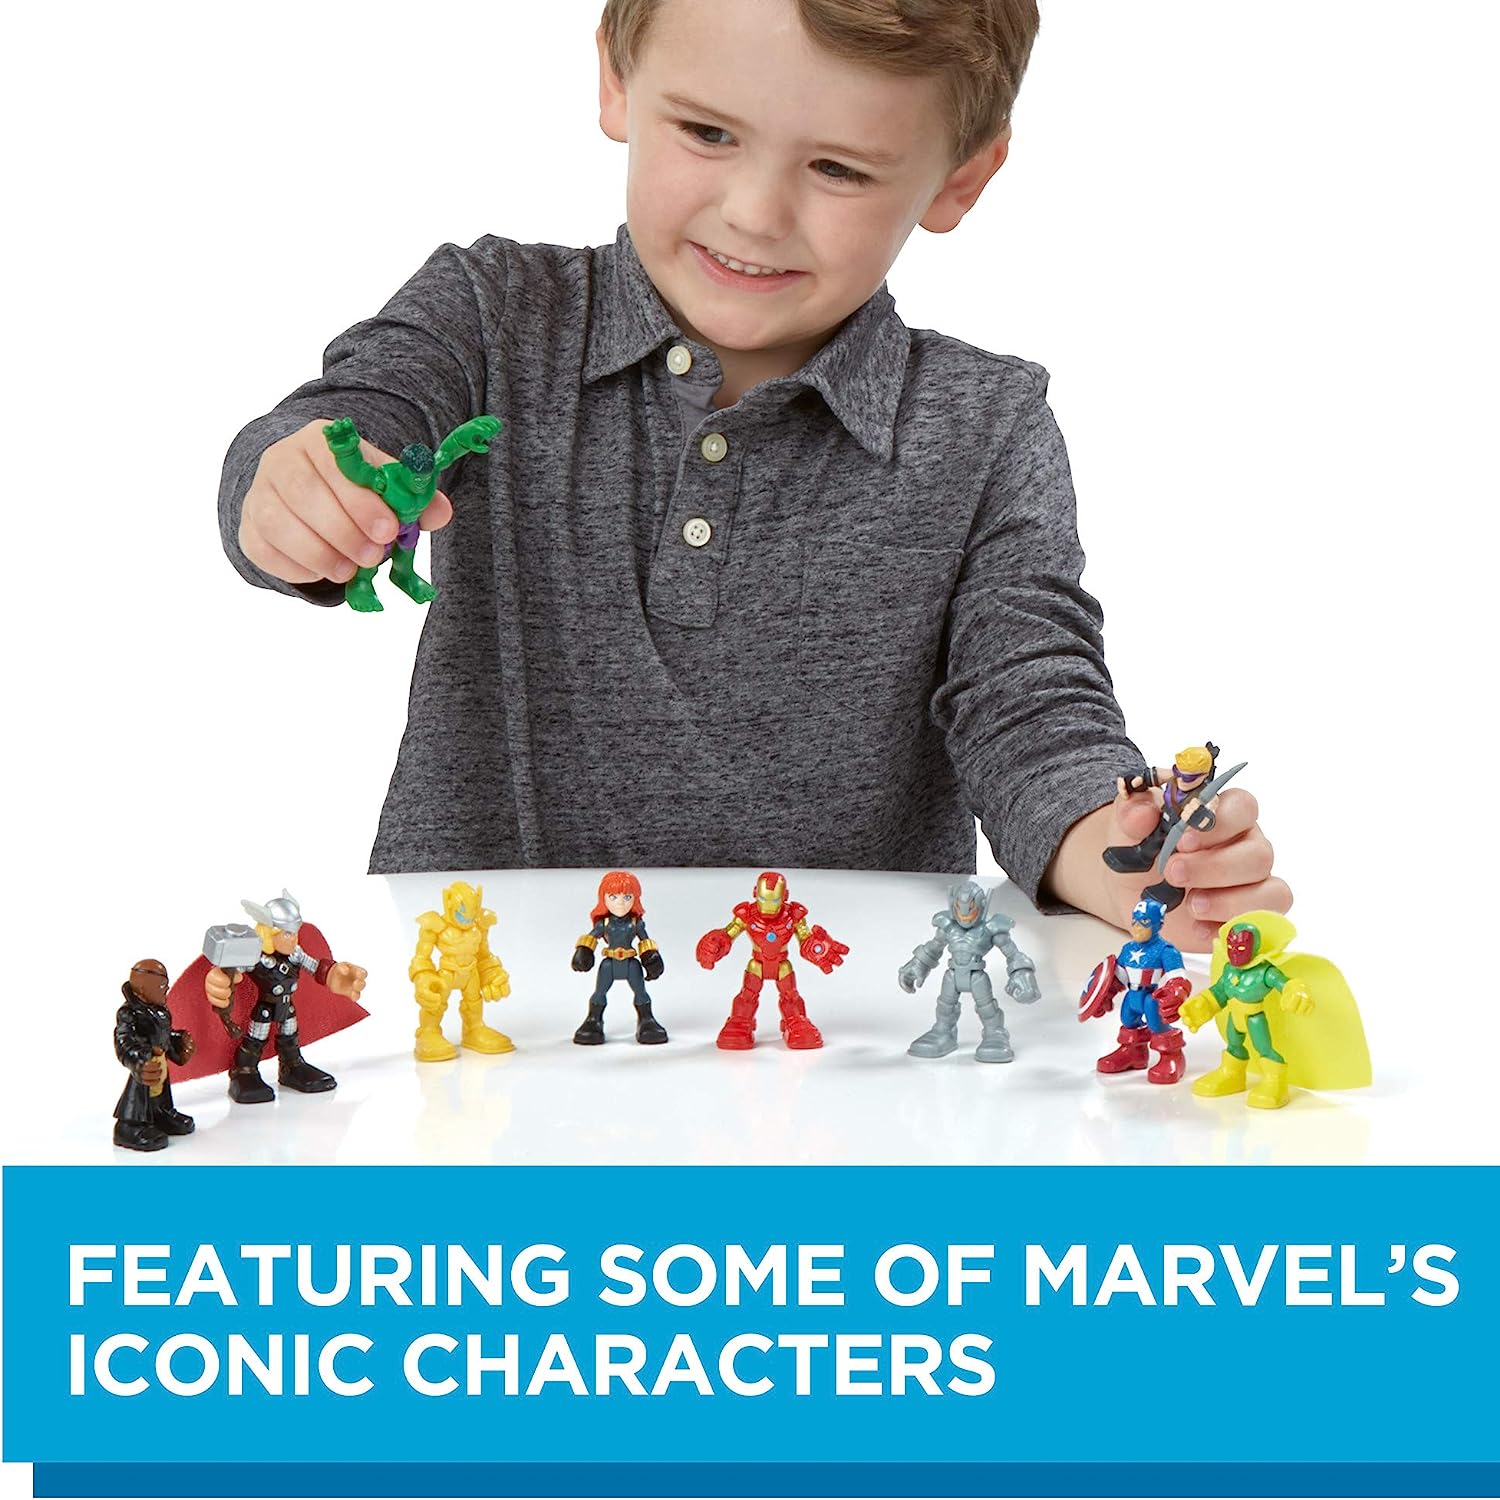 مجموعة Marvel Playskool Heroes Super Hero Adventures Ultimate Set، 10 شخصيات مجسمة قابلة للتجميع مقاس 2.5 بوصة